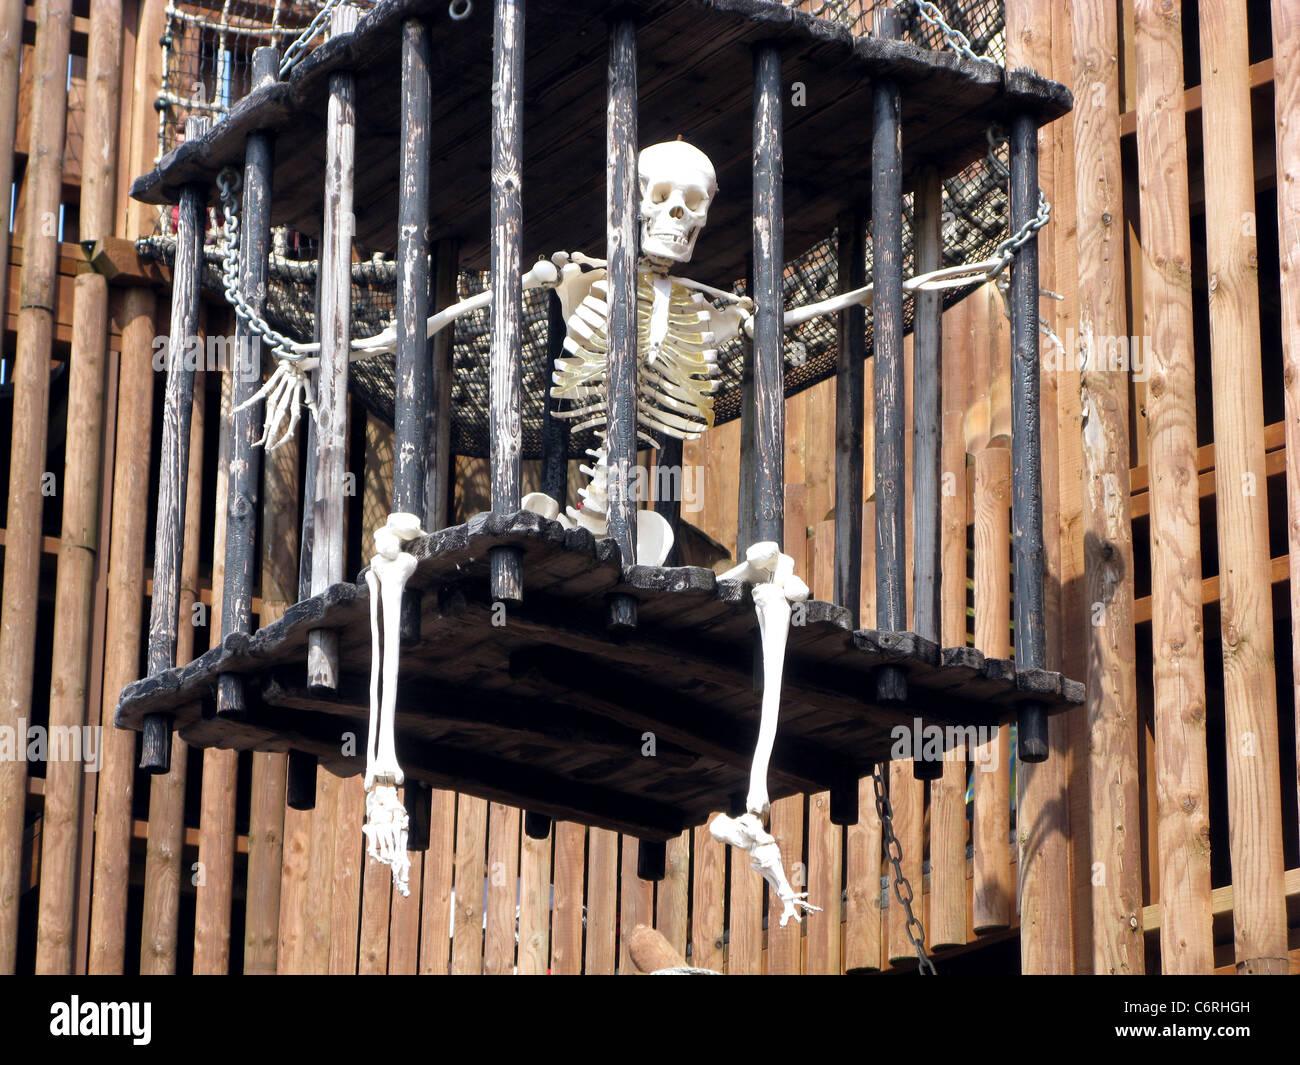 Squelette dans une cage Photo Stock - Alamy